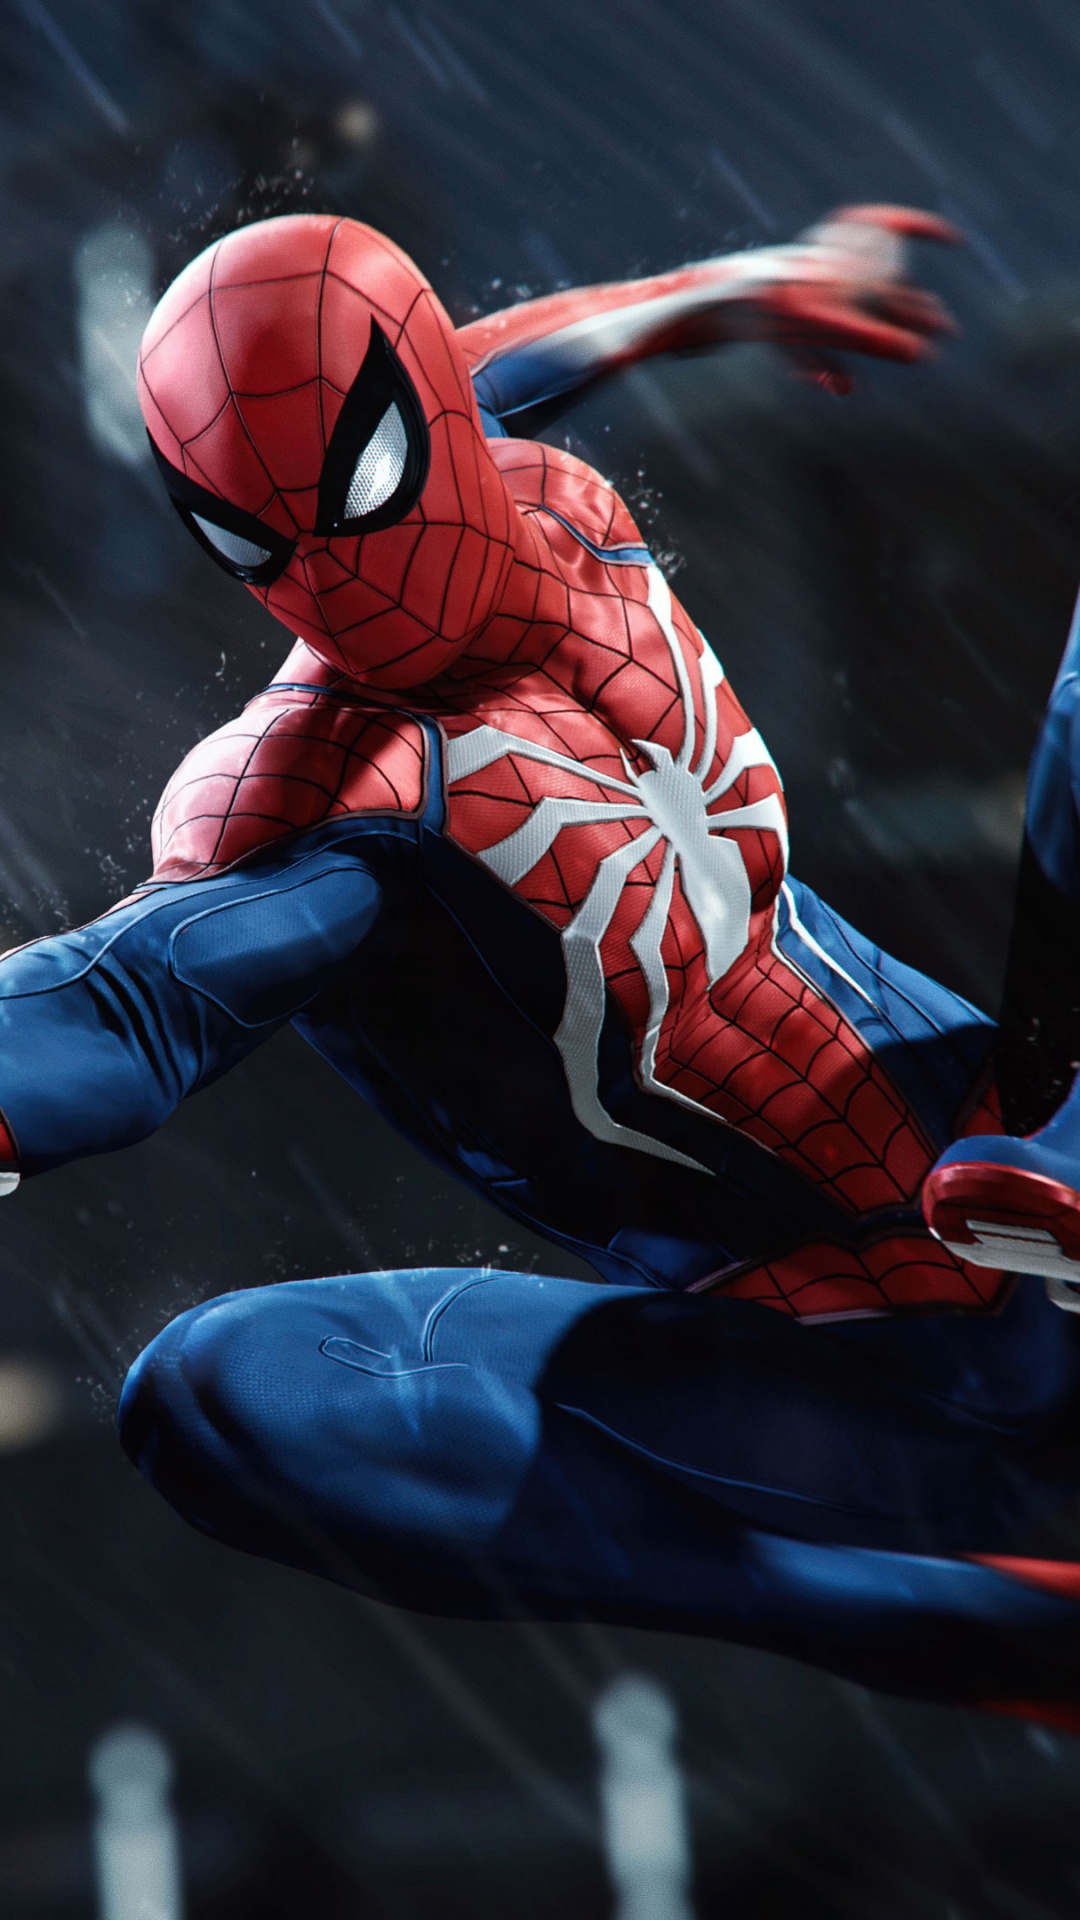 Spider-man, Insomniac Games, Superhéroe, Figura de Acción, Personaje de Ficción. Wallpaper in 1080x1920 Resolution